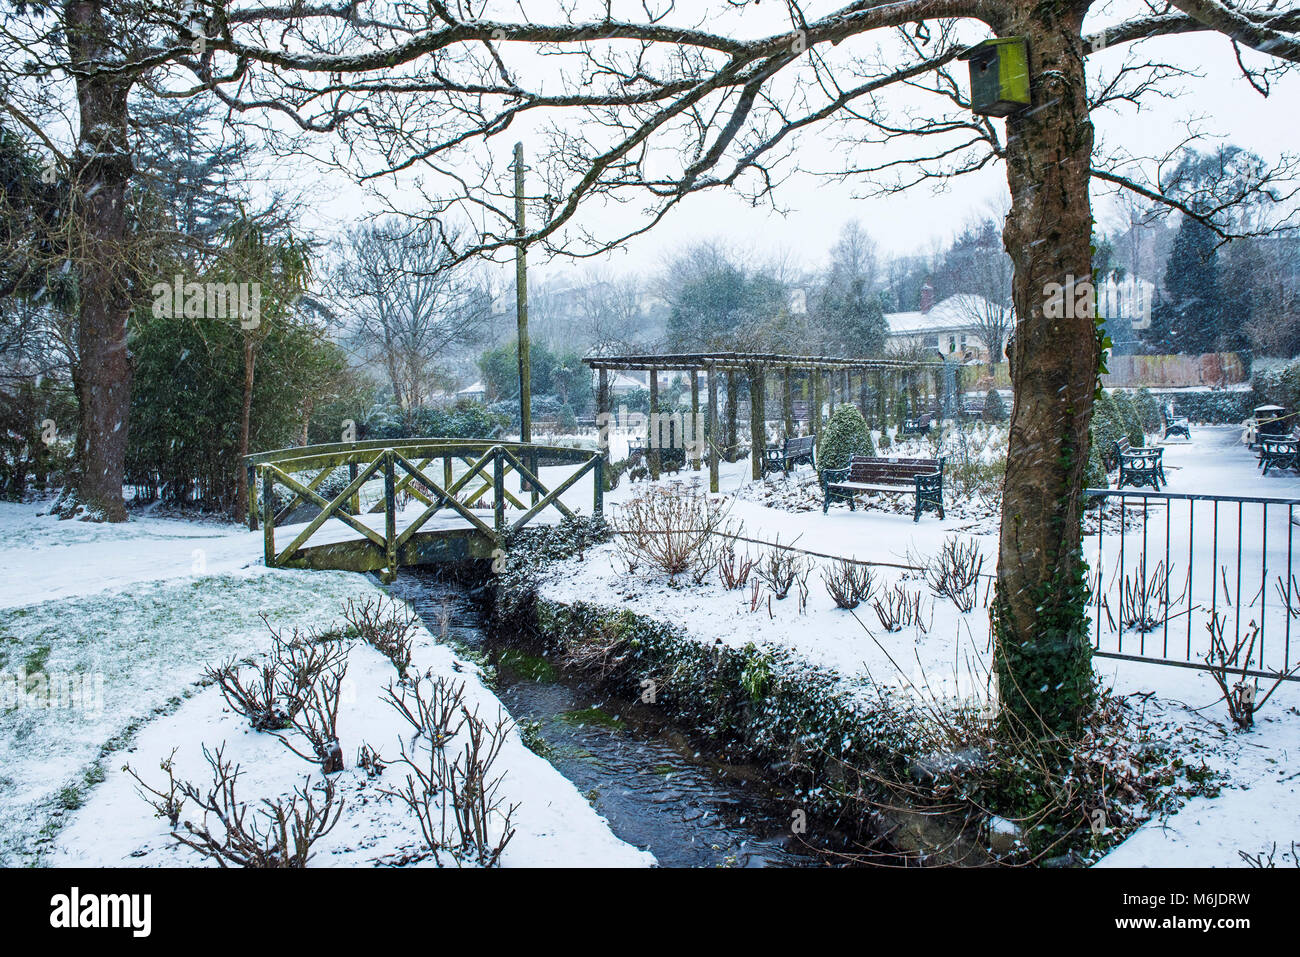 Les fortes chutes de neige dans les jardins de Trenance Newquay Cornwall. Banque D'Images